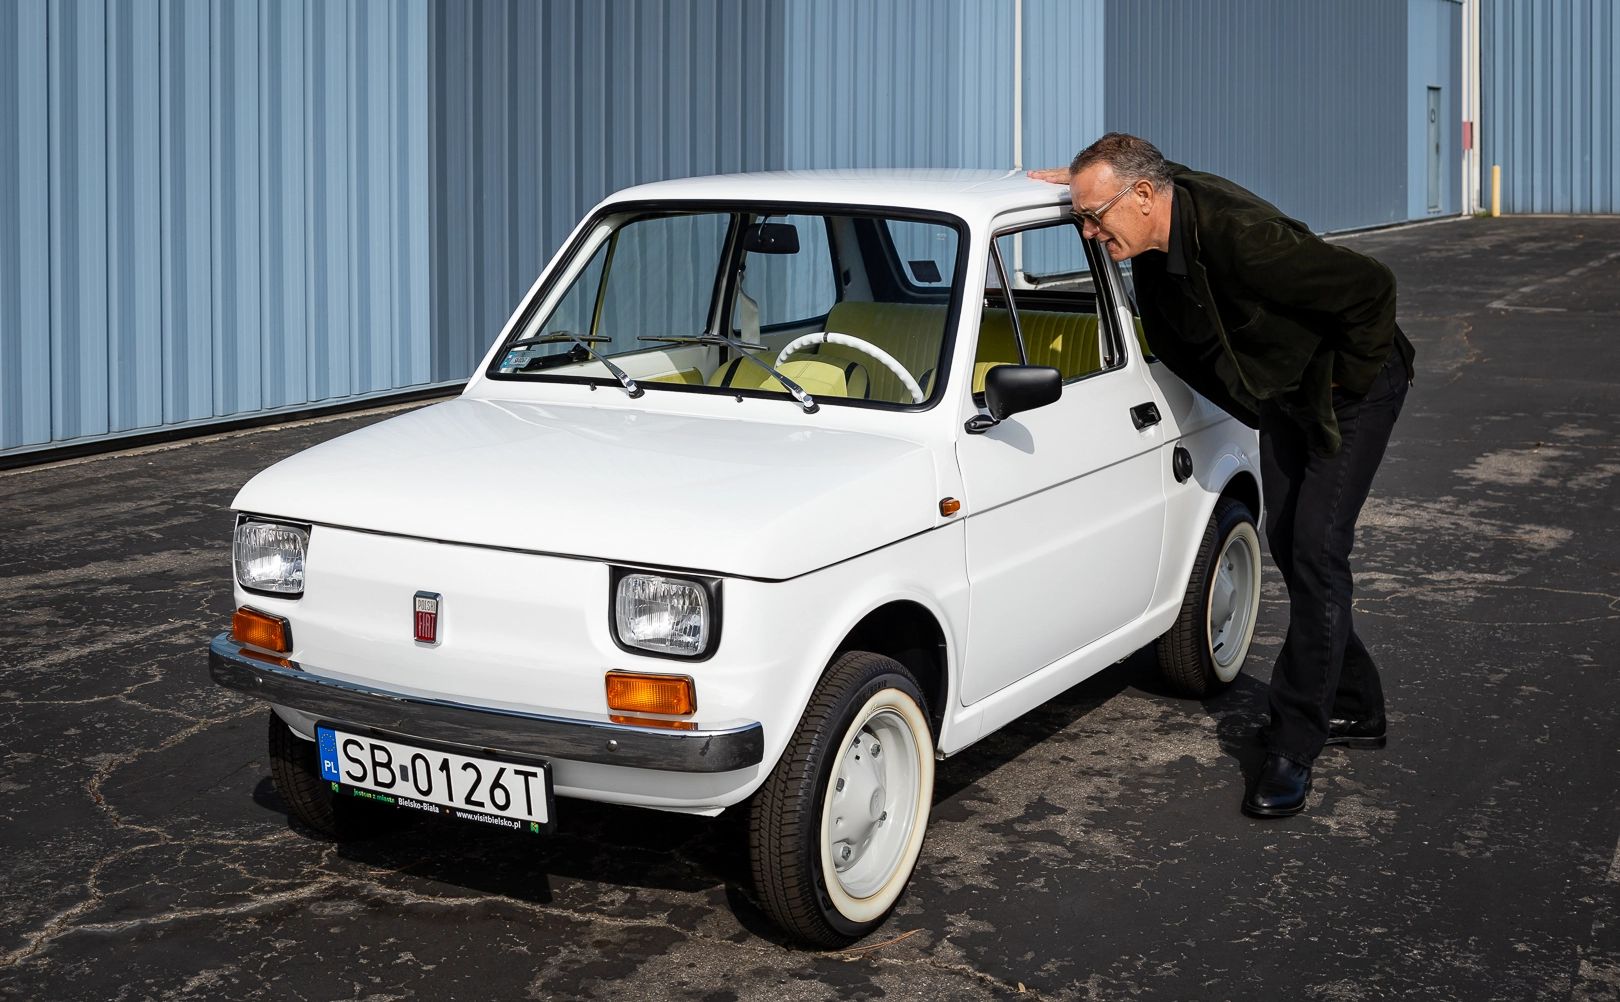 Fiat 126p Toma Hanksa sprzedany. To najdroższy "maluch" świata - Dziennik.pl